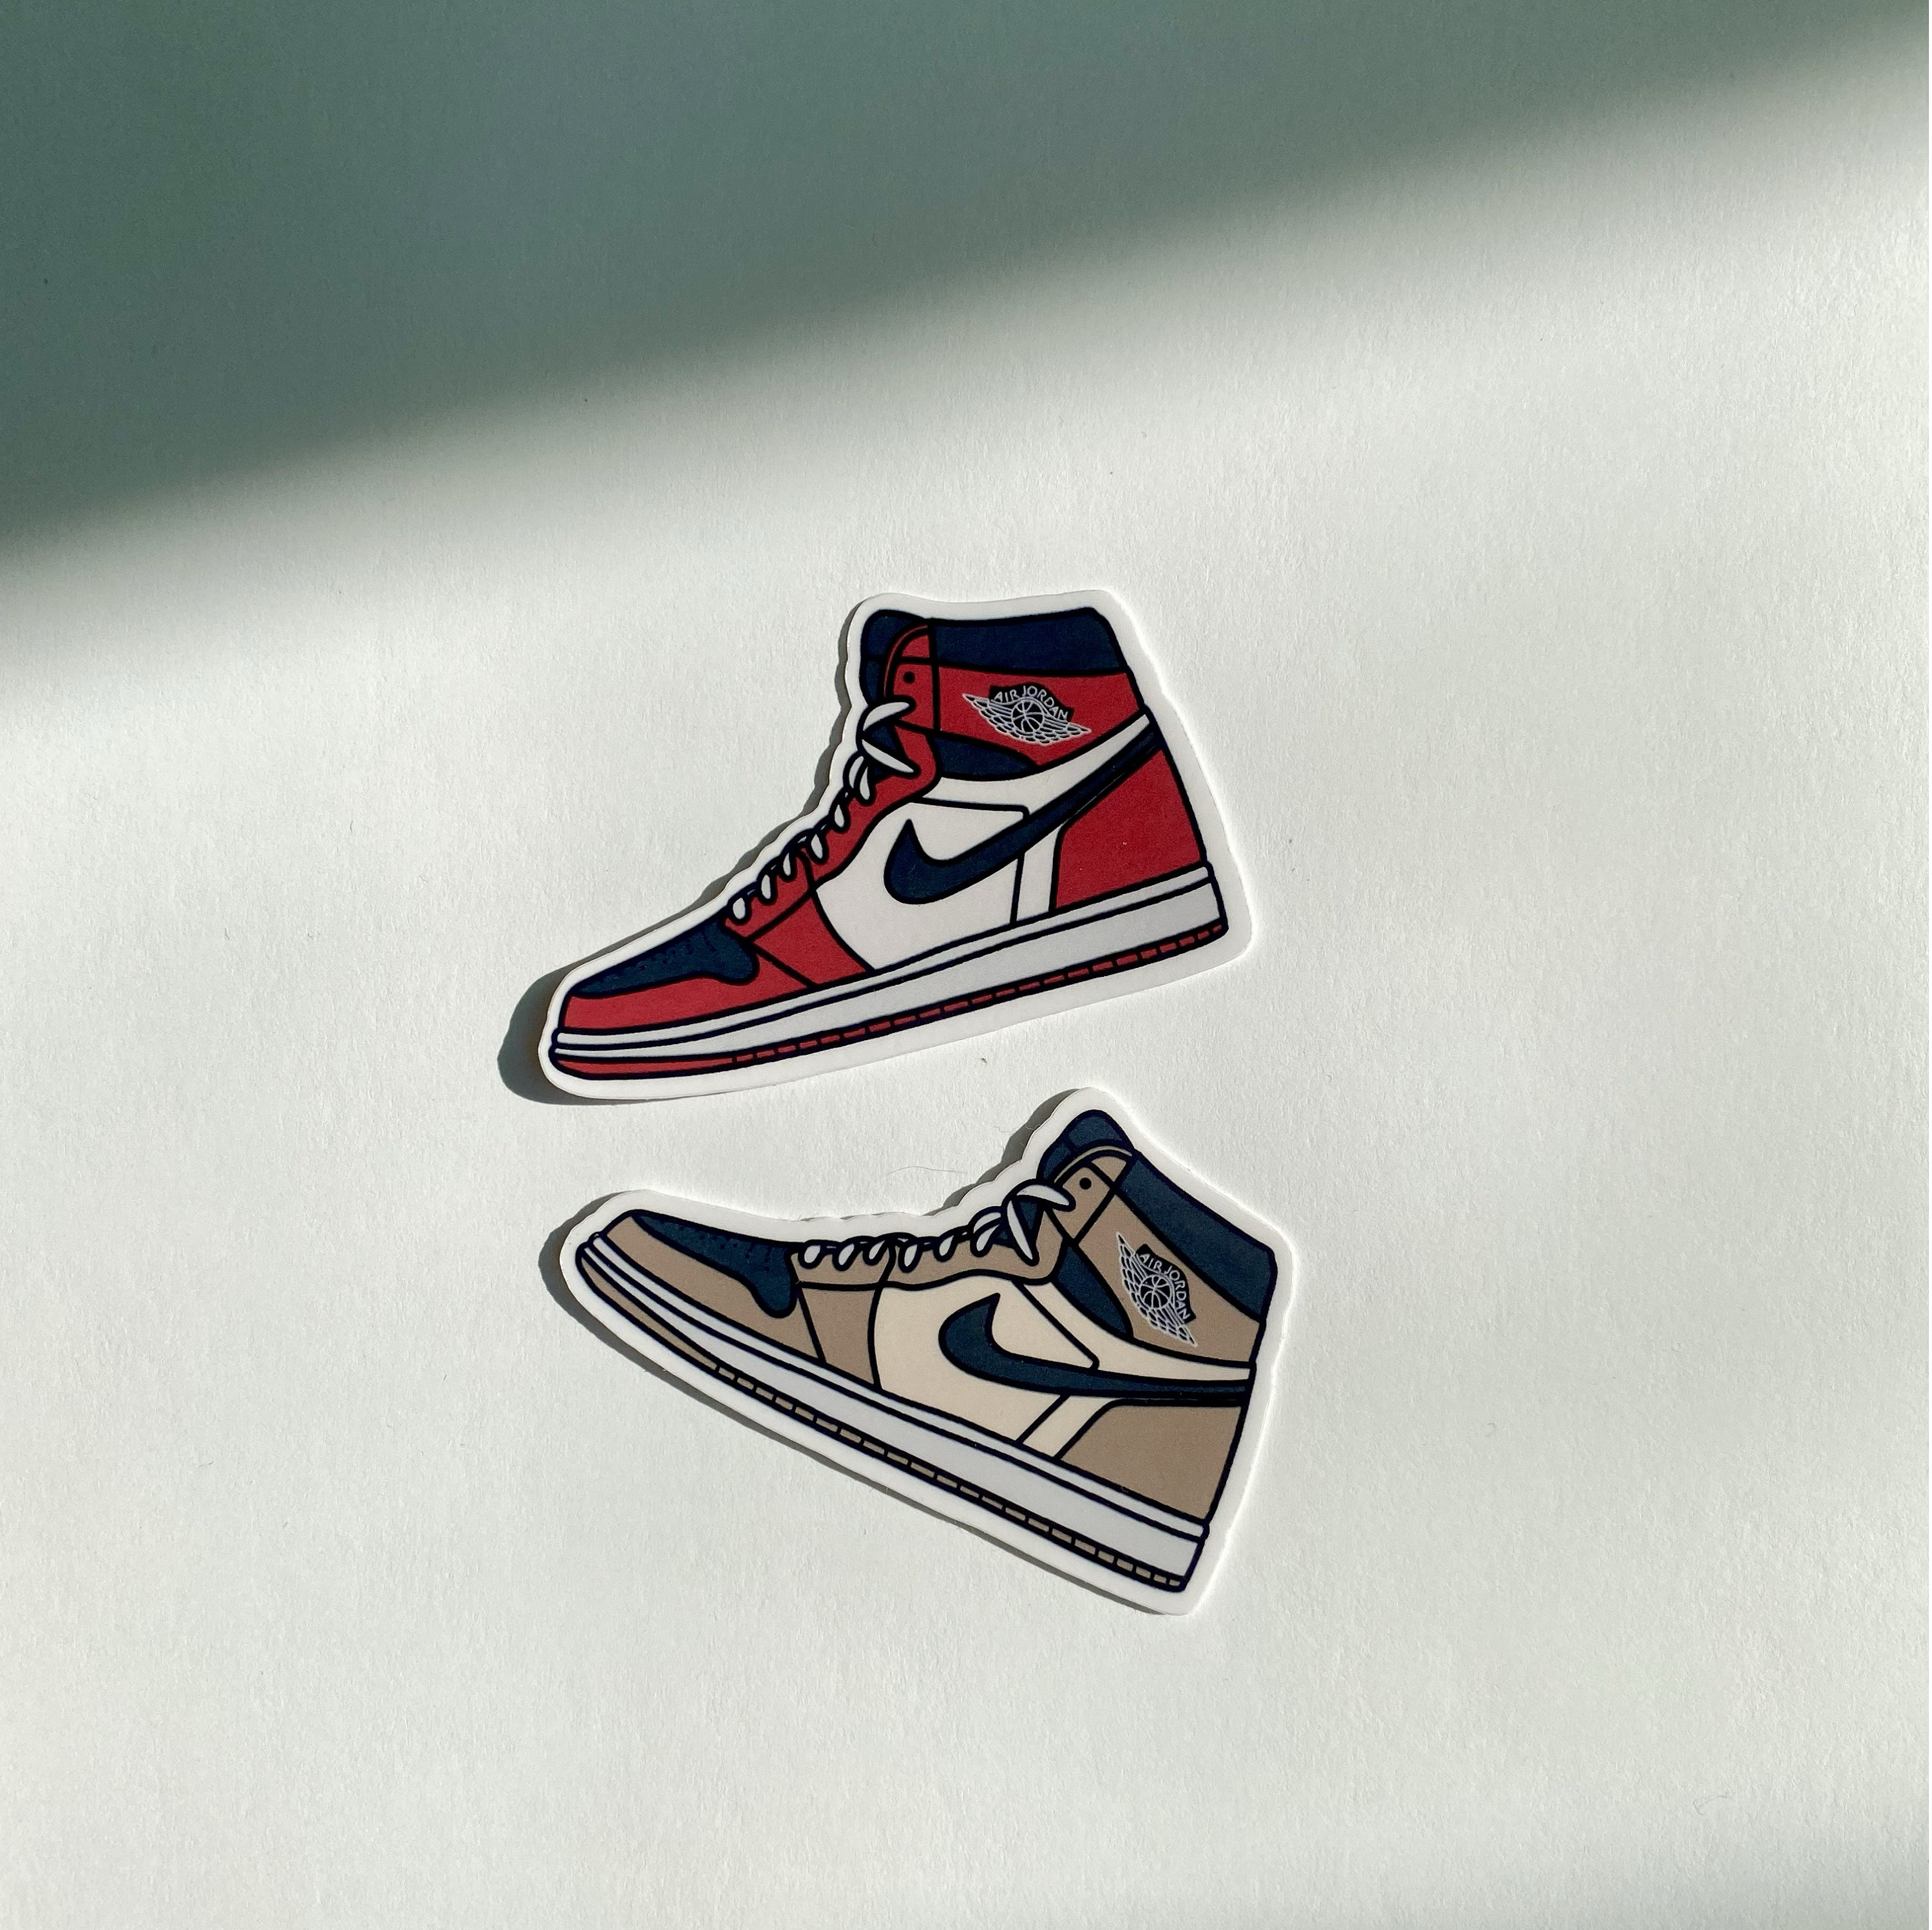 Nike Air Jordan Sticker Set of 2 - Etsy UK